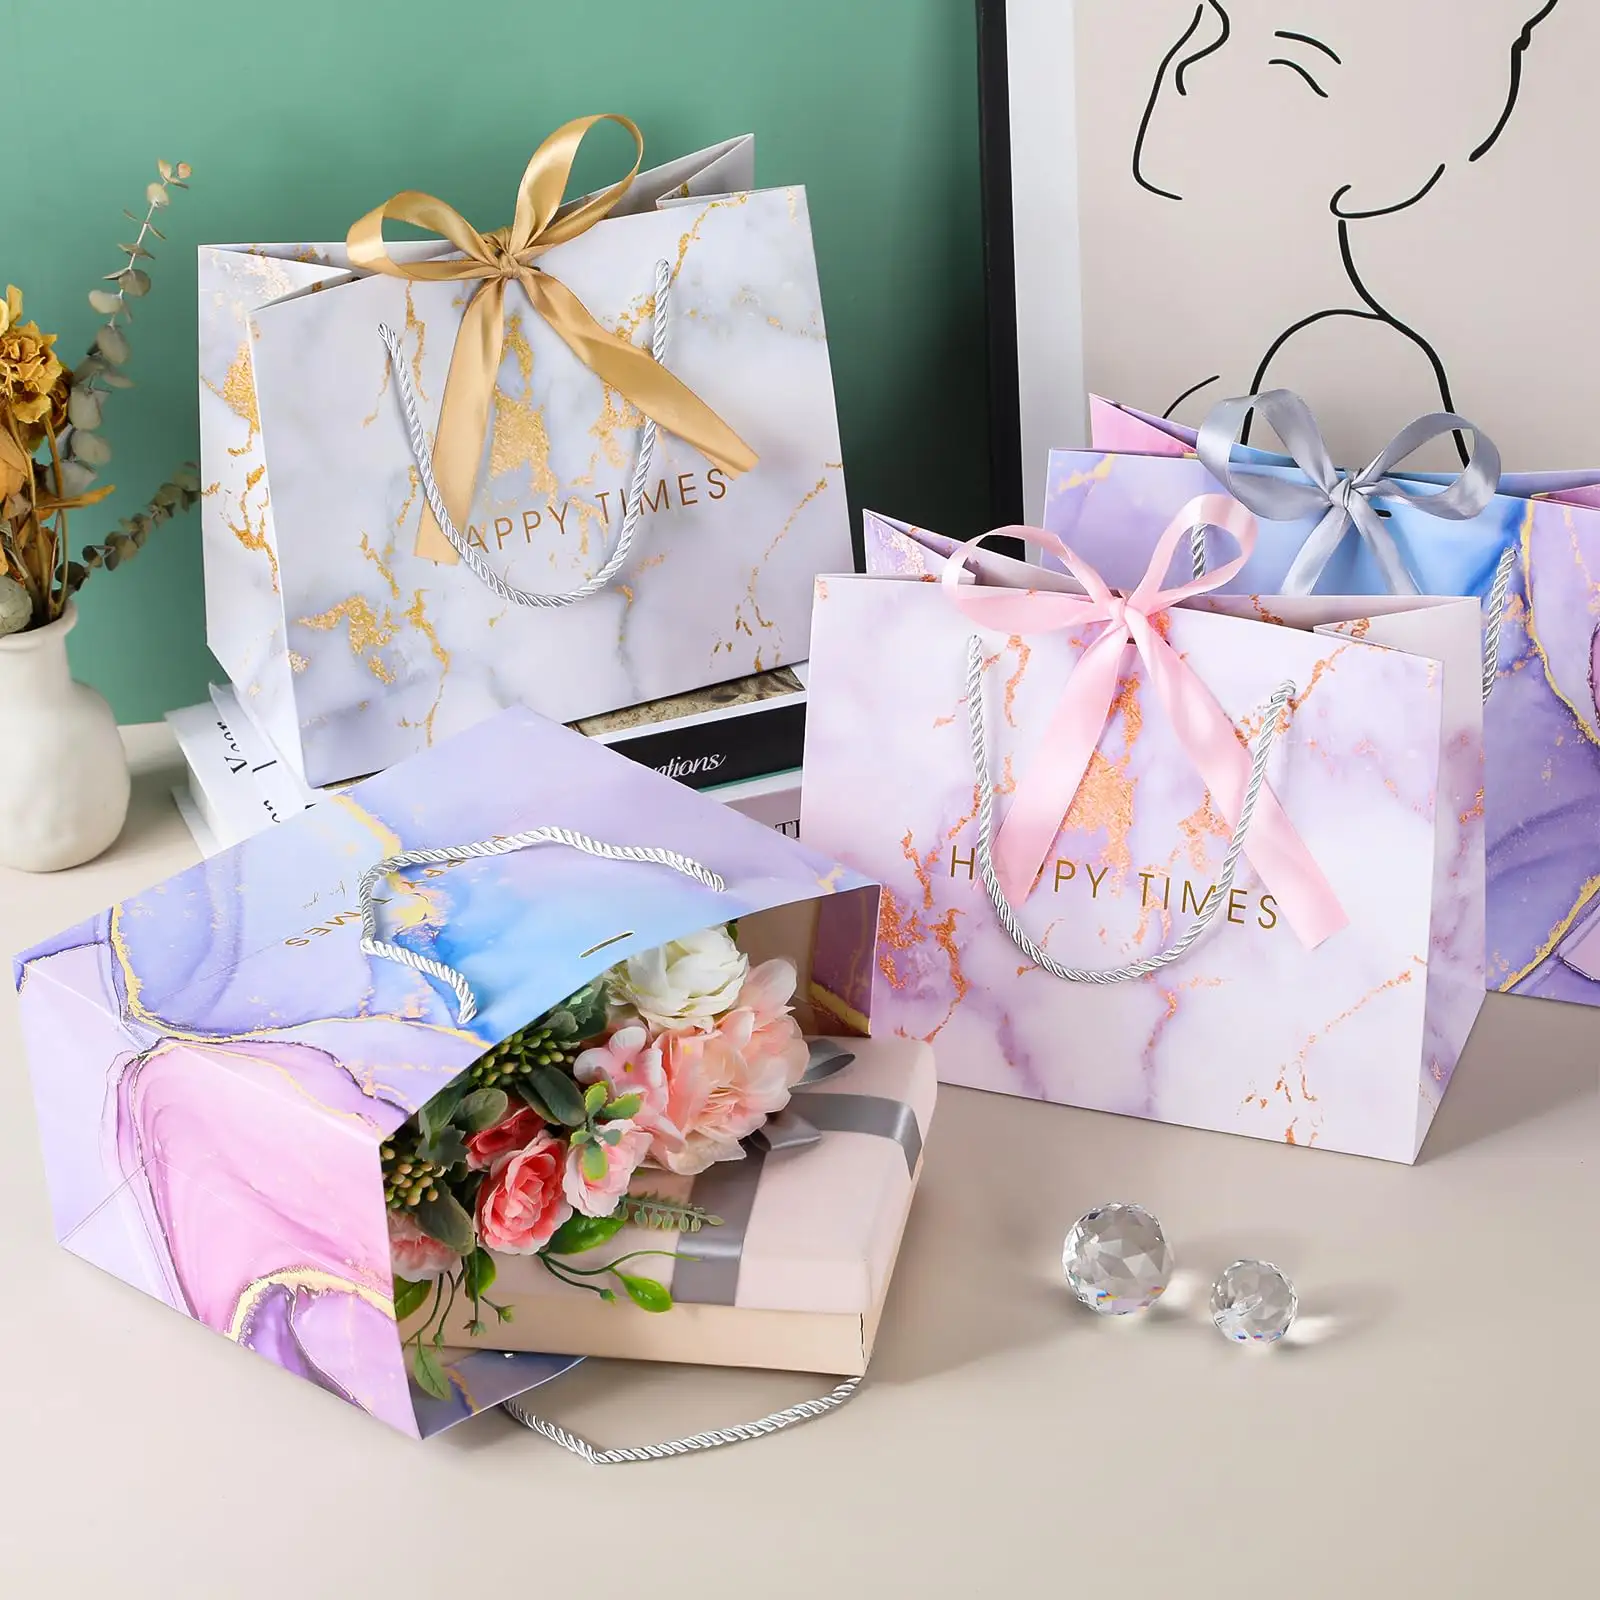 Modern şerit dekor baskı hediye sarma çantası göz kamaştırıcı şerit doğum günü alışveriş giyim mermer ilmek çanta